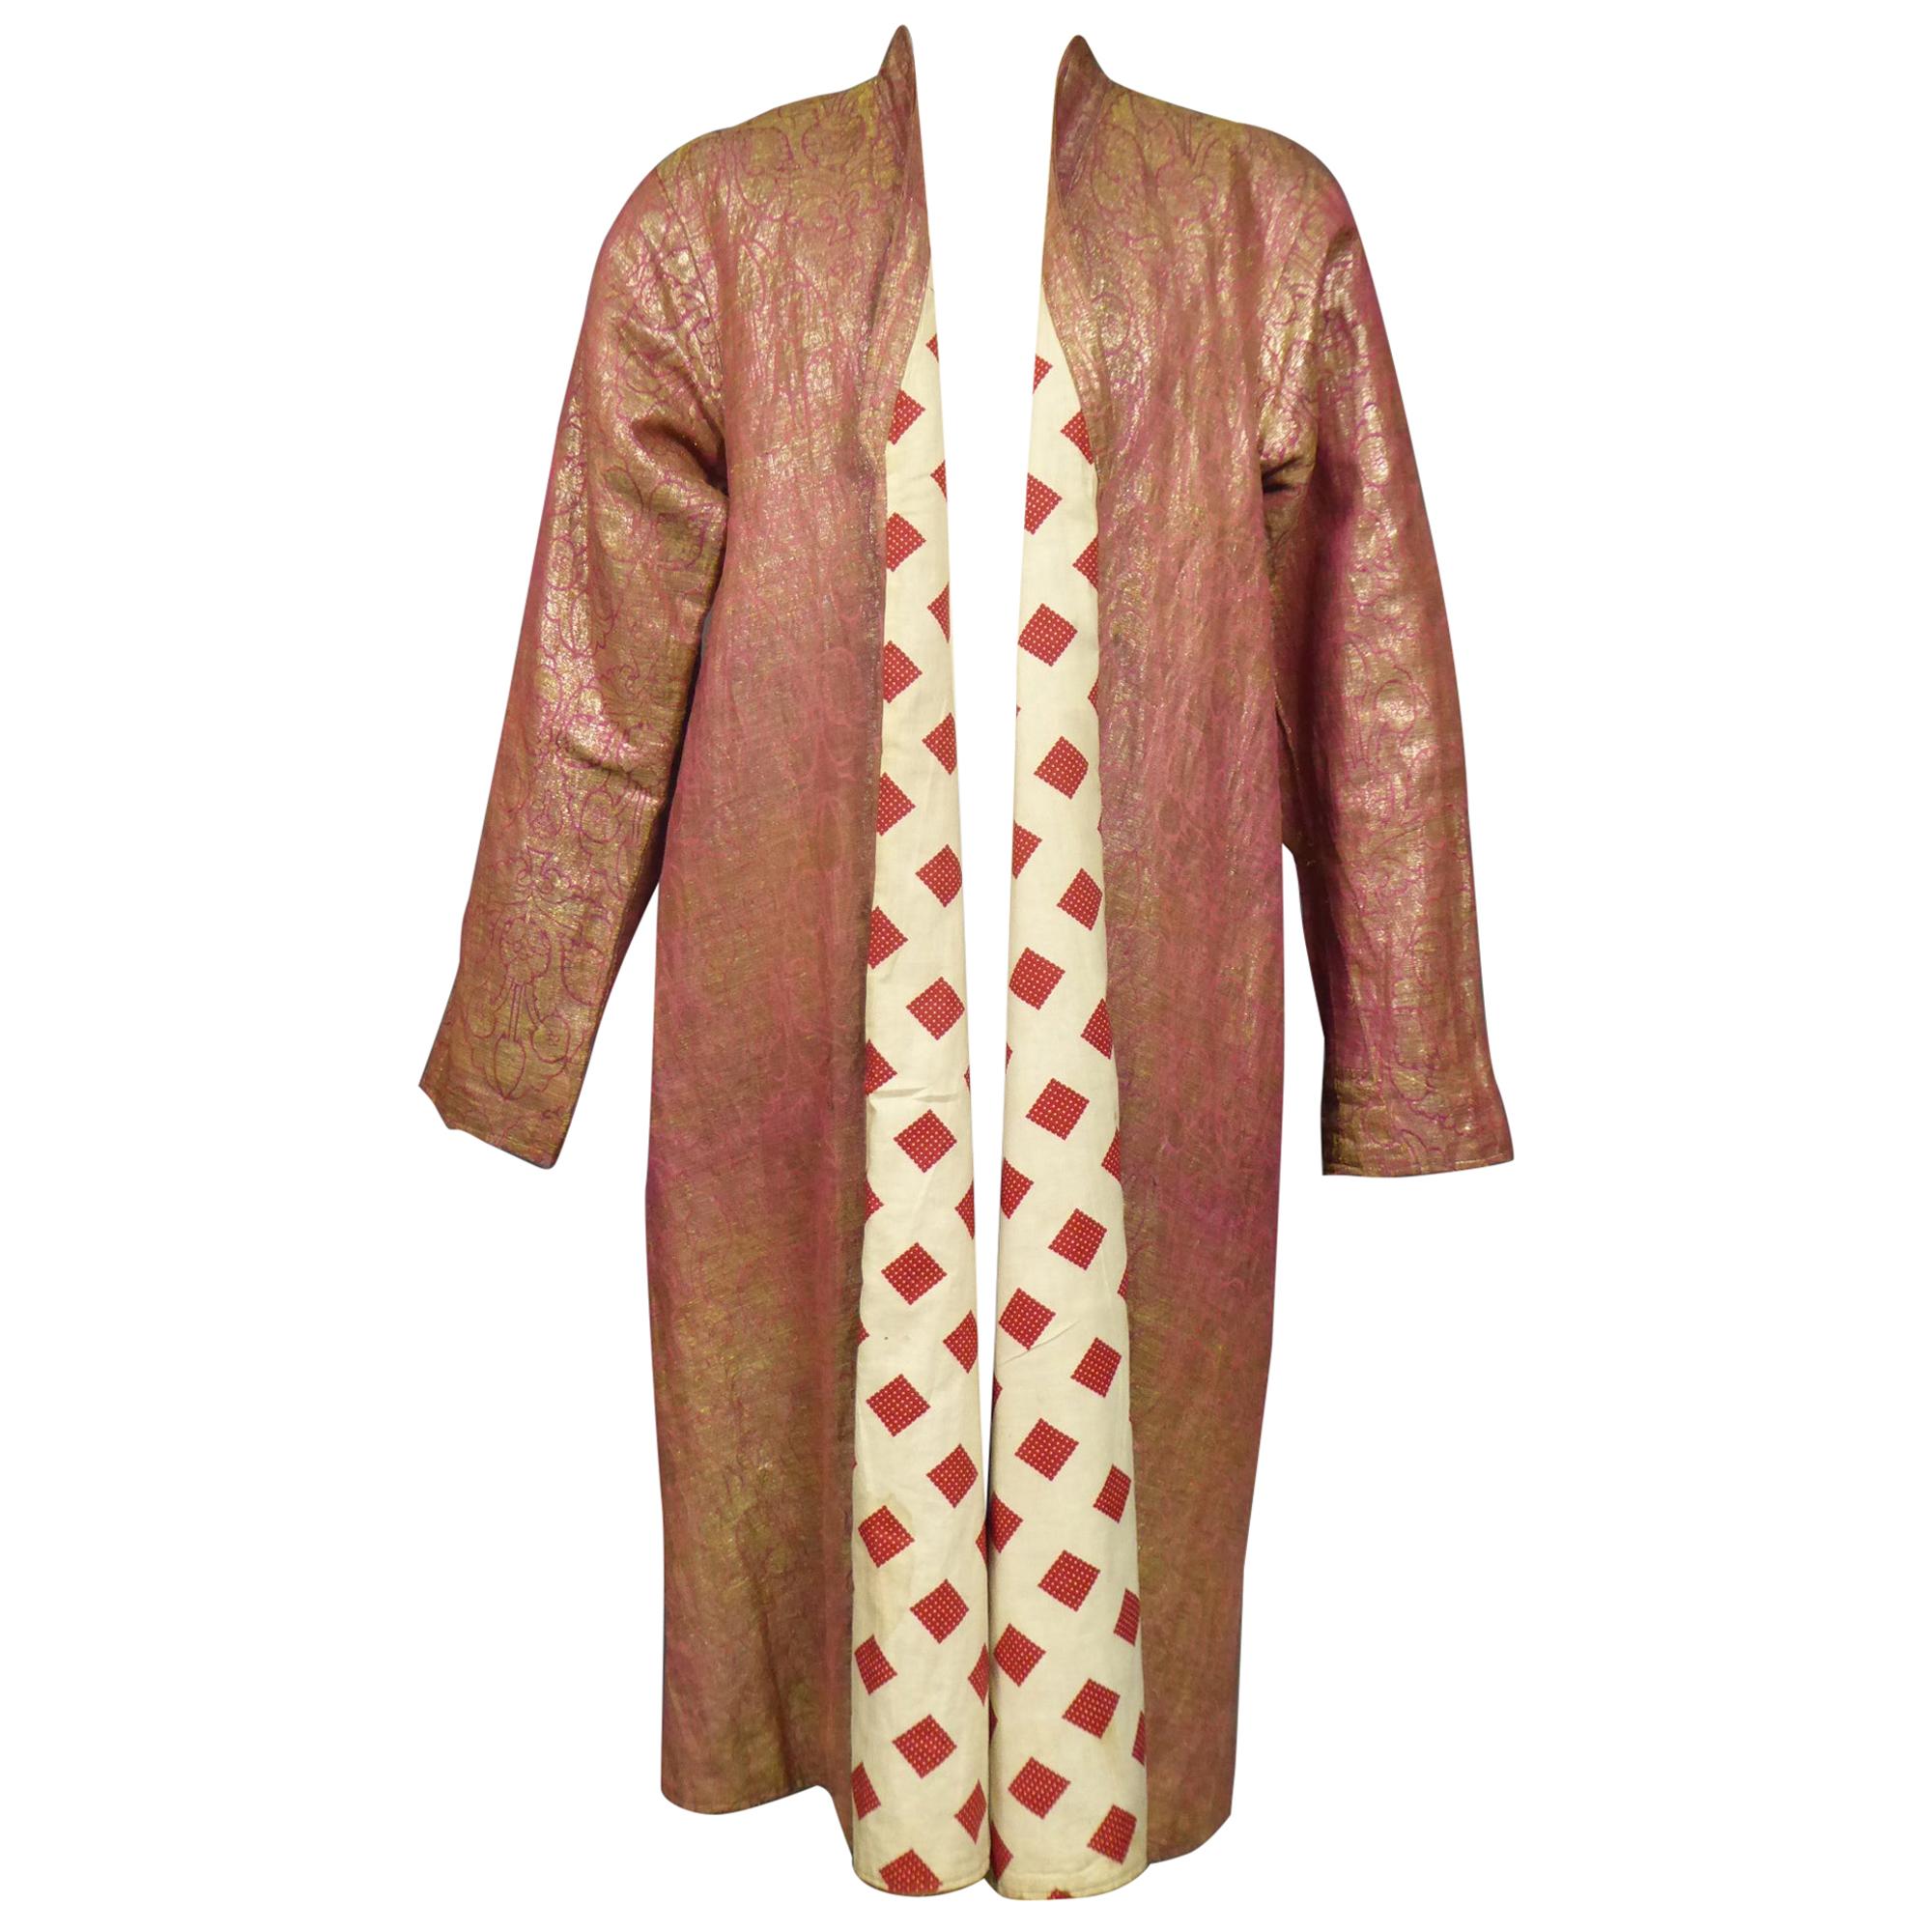 Coat or Banyan in Gold Lamé and Russian Cotton Print - Uzbekistan Circa 1920